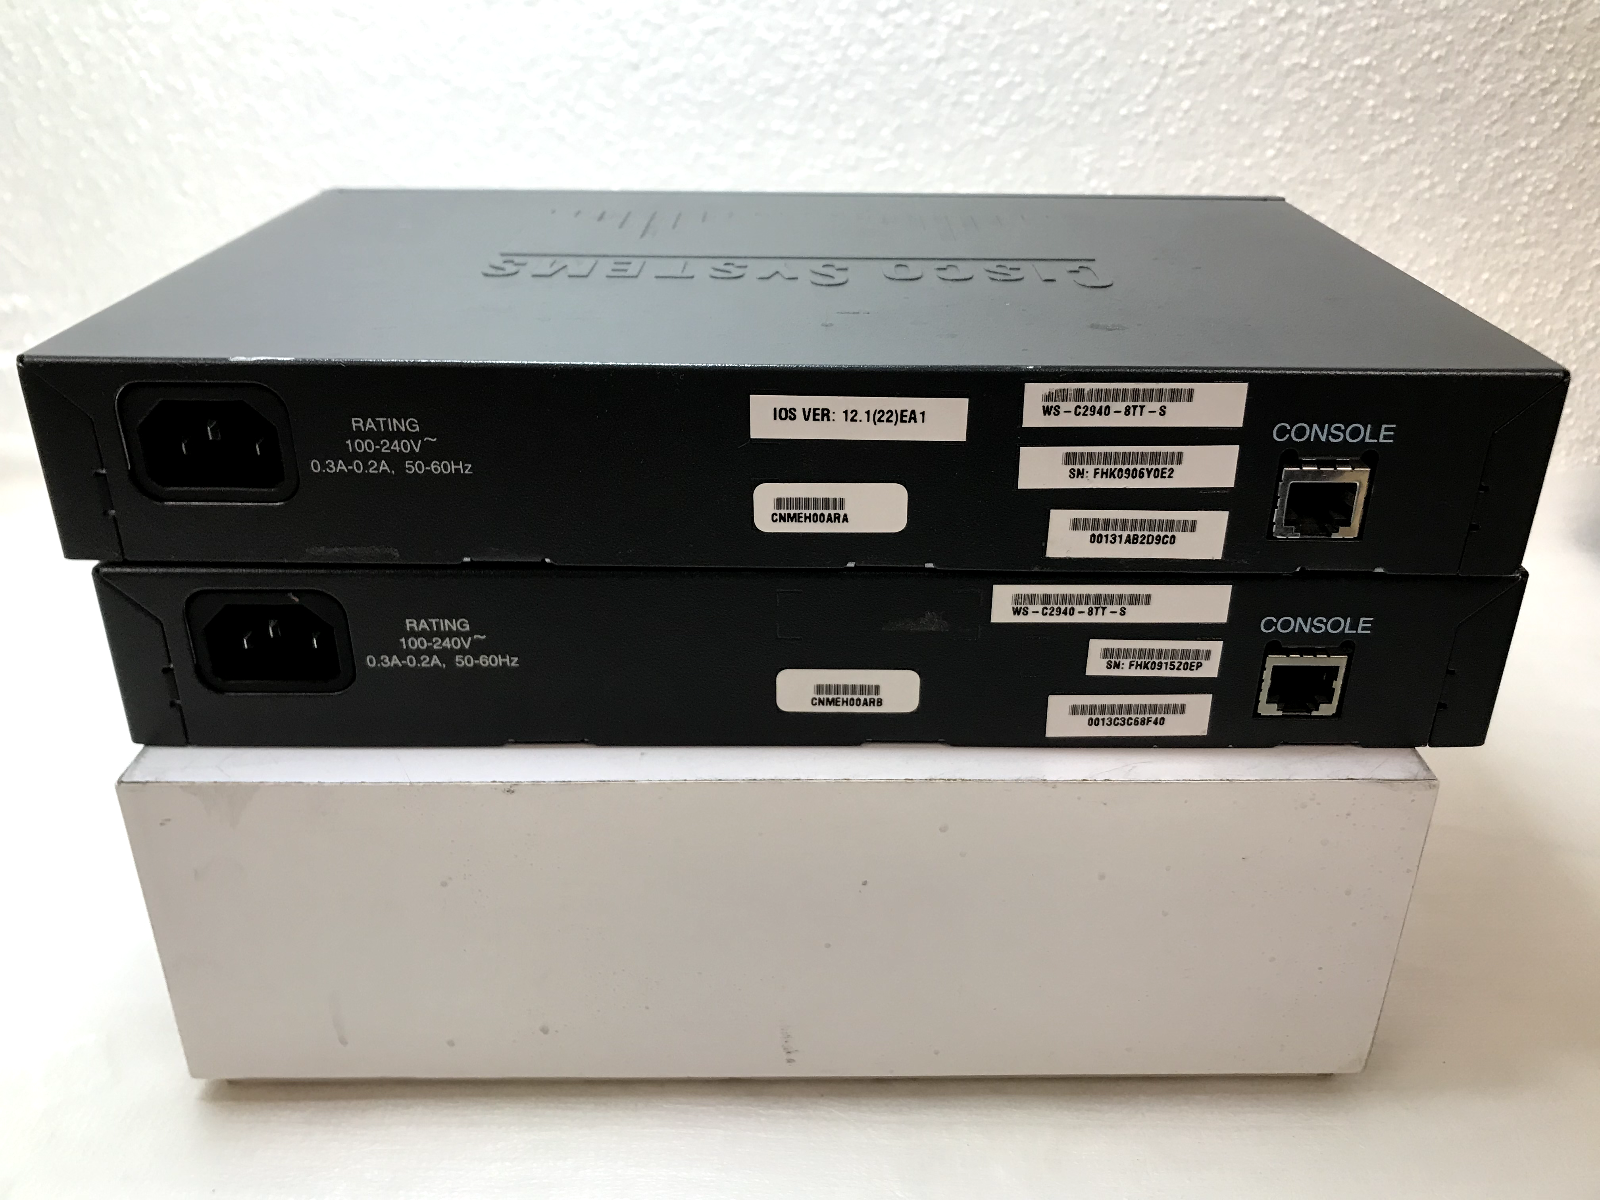 2 X Cisco Systems Catalyst 2940 Series 8 Port  Ethernet Switch WS-C2940-8TT-S Cisco WS-C2940-8TT-S - фотография #4